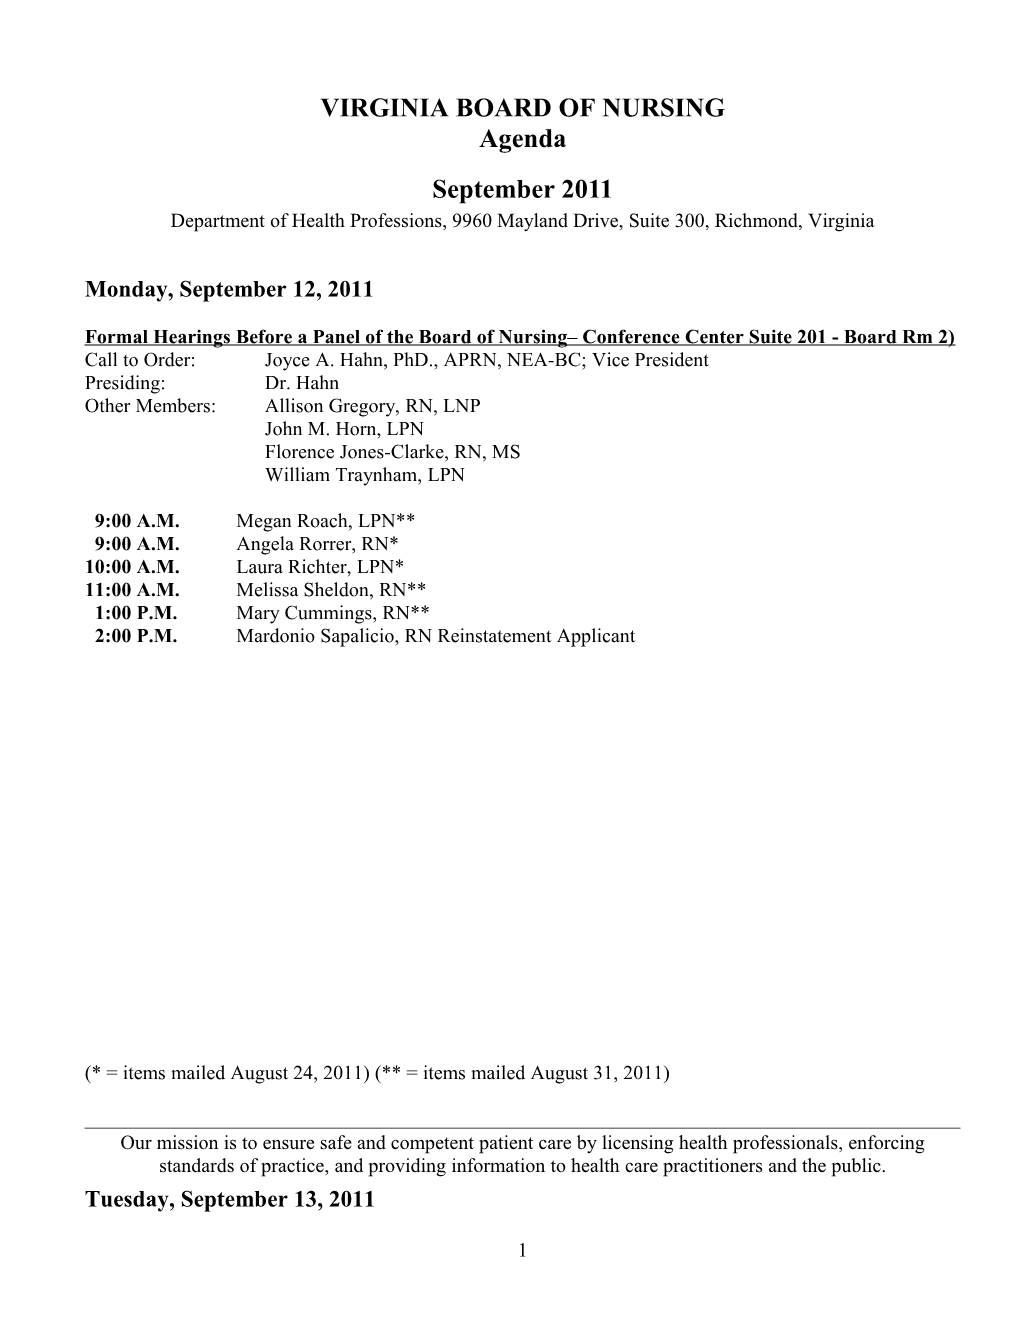 Board of Nursing Agenda - Sept. 2011